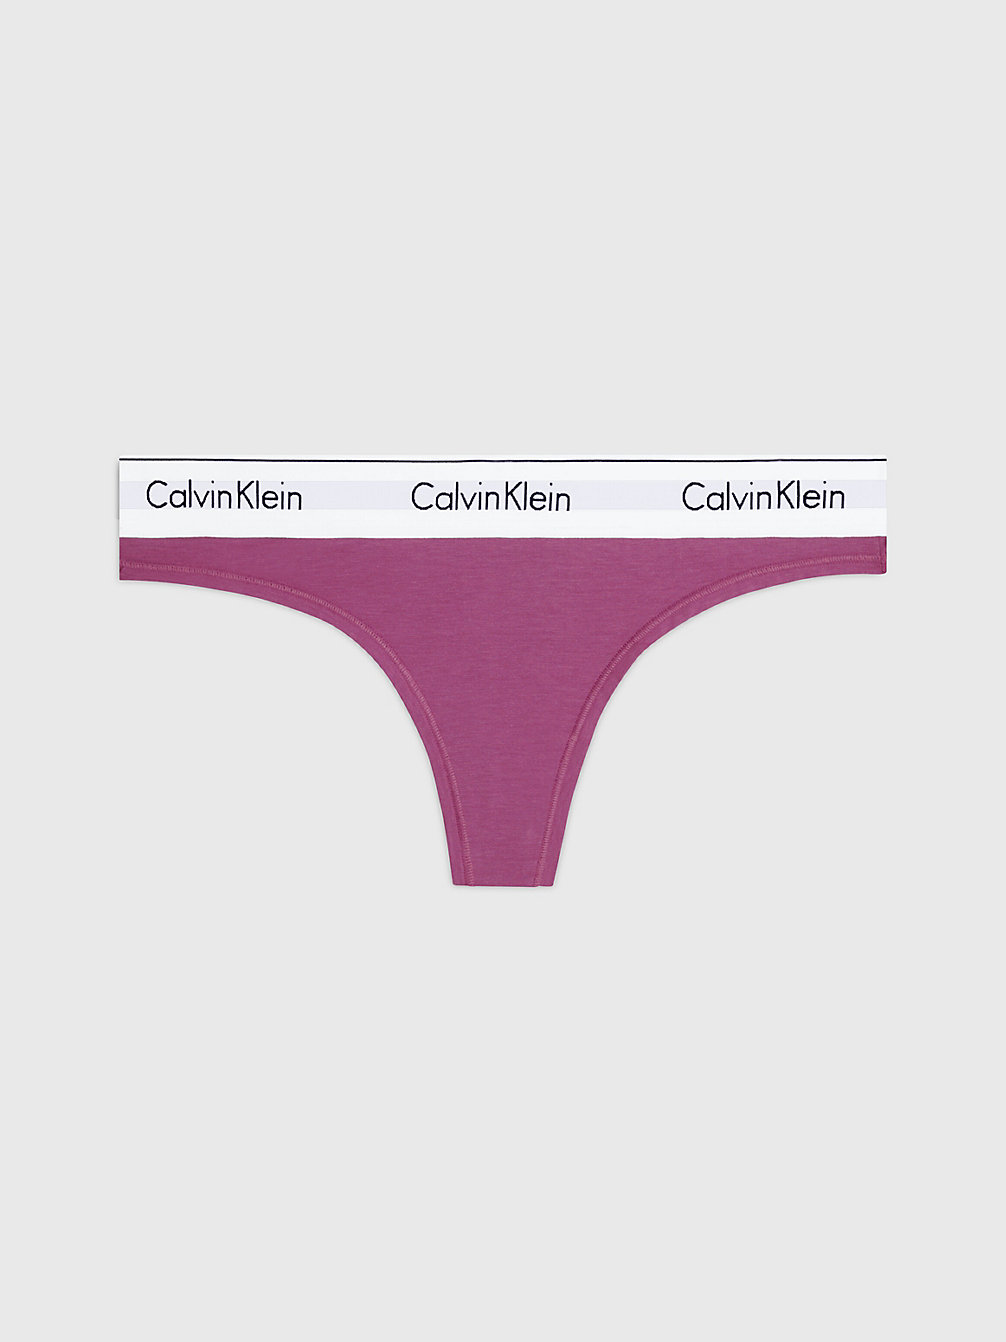 AMETHYST String - Modern Cotton undefined Damen Calvin Klein